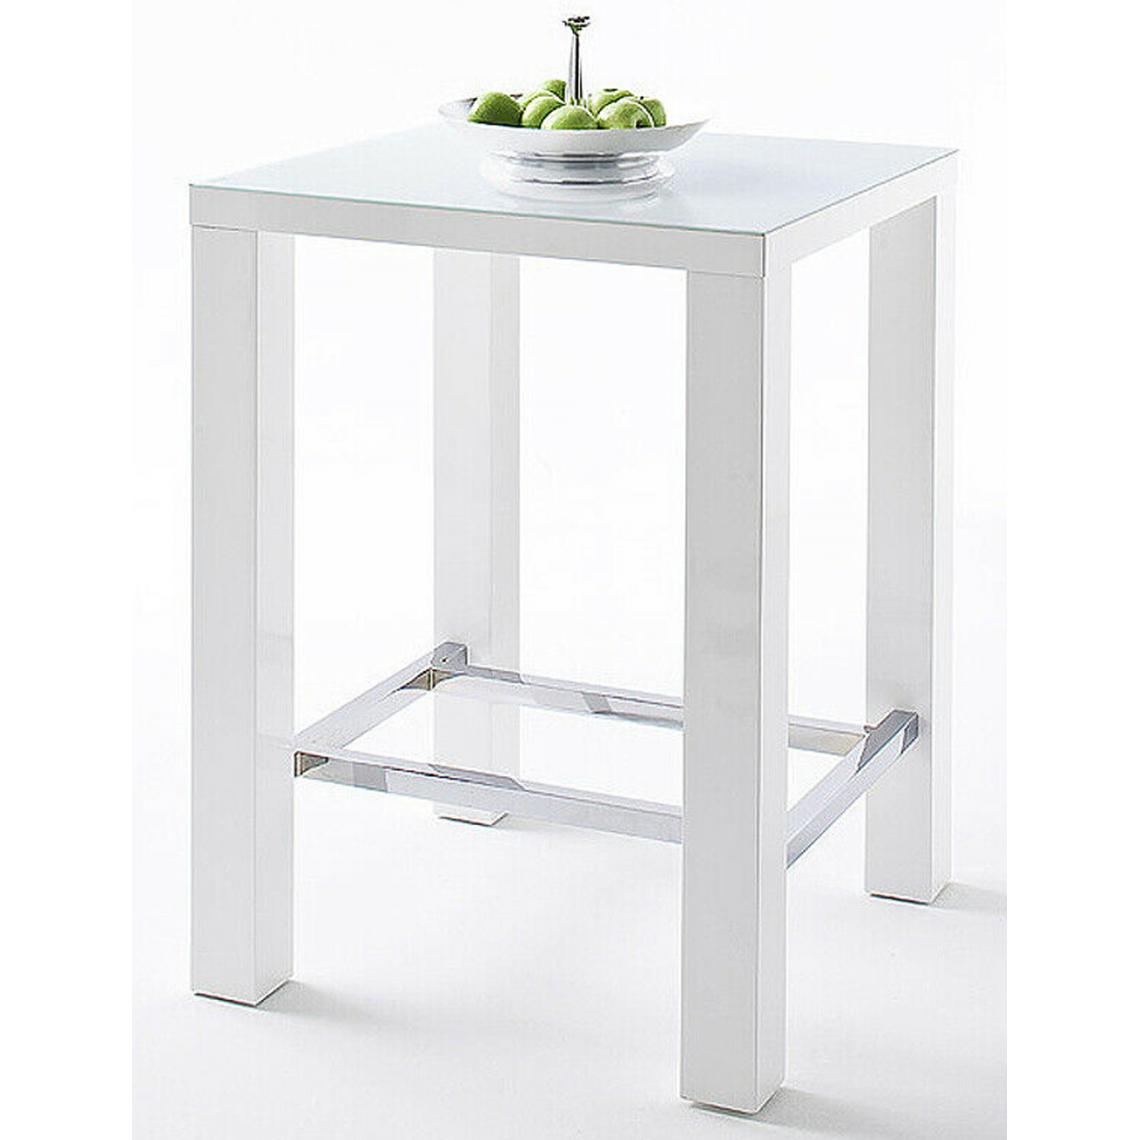 Pegane - Table de bar carée en métal verre blanc brillant - L.80 x H.107 x P.80 cm - Tables à manger